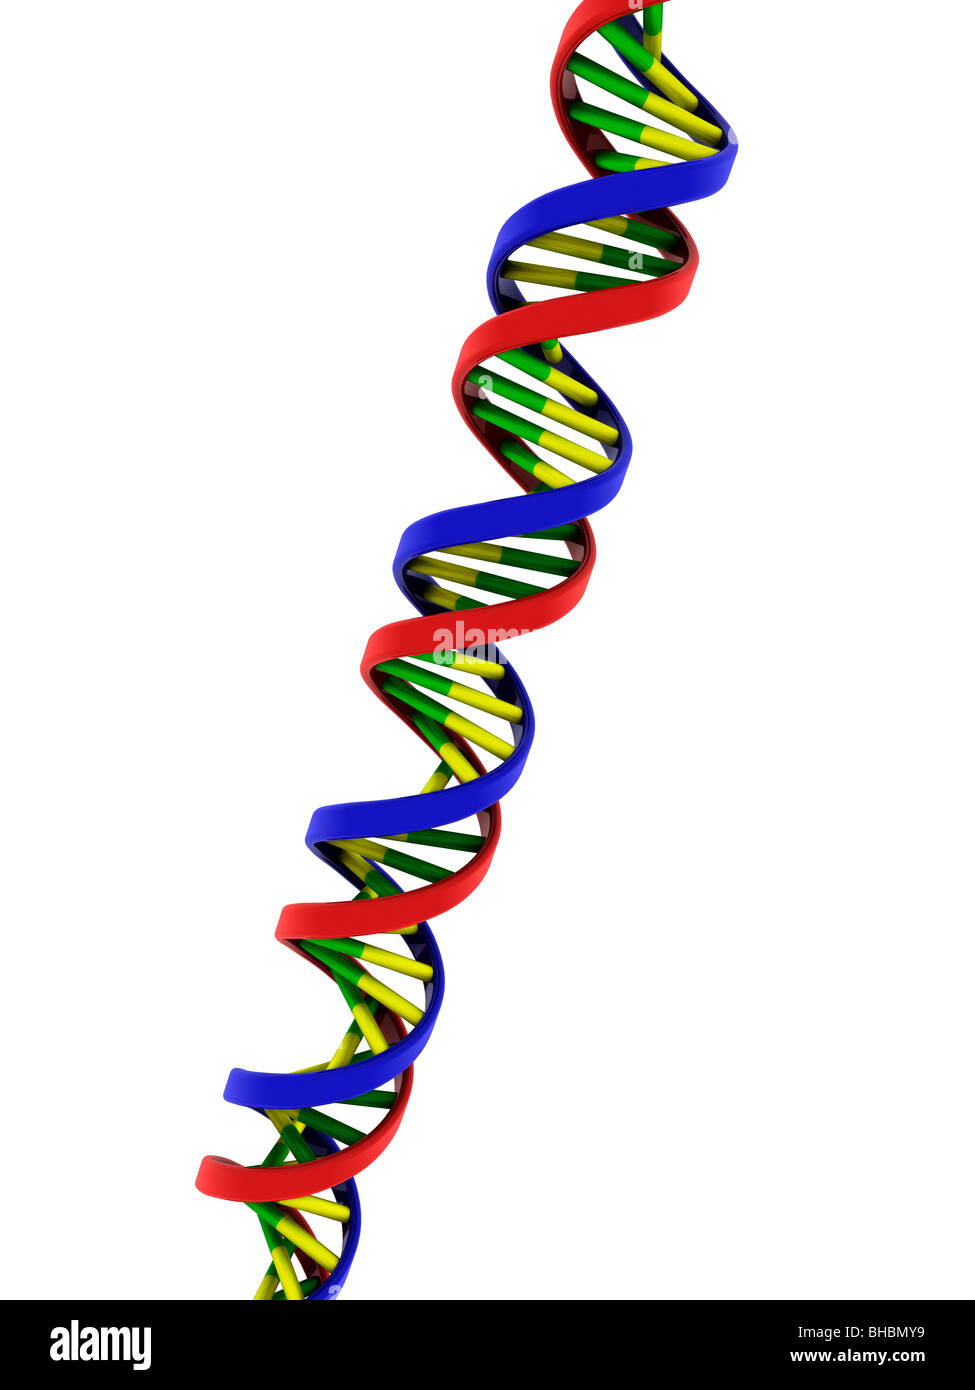 Modelo de doble hélice del ADN Foto de stock